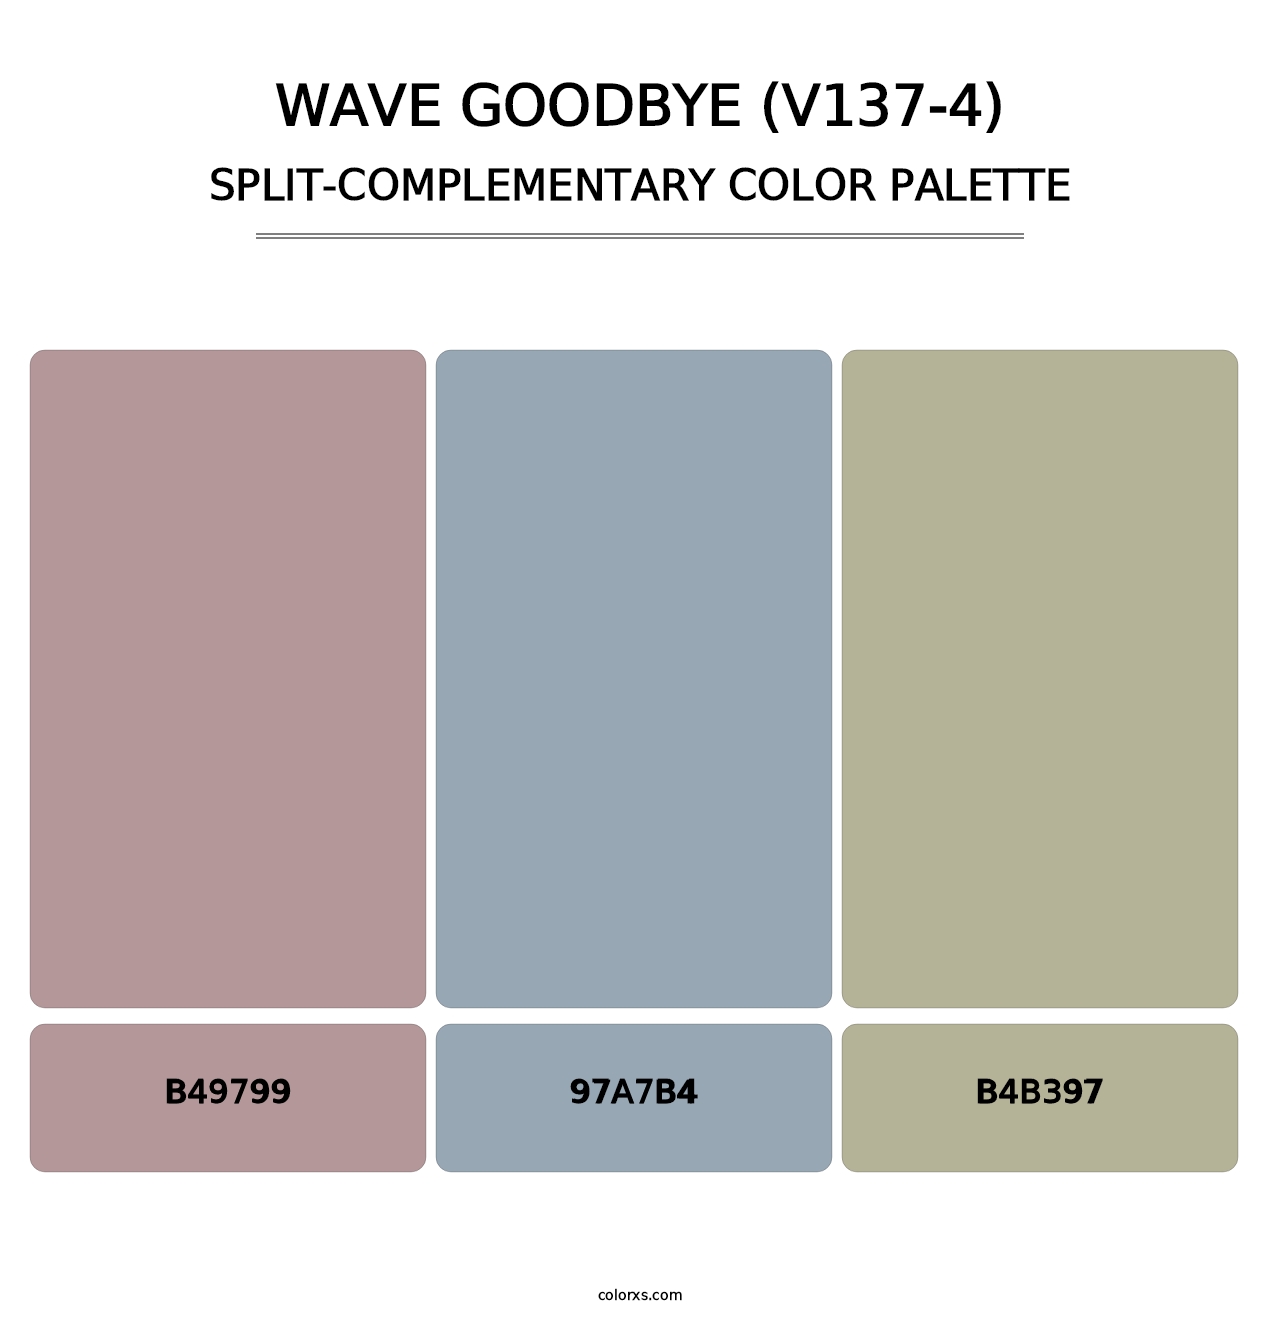 Wave Goodbye (V137-4) - Split-Complementary Color Palette